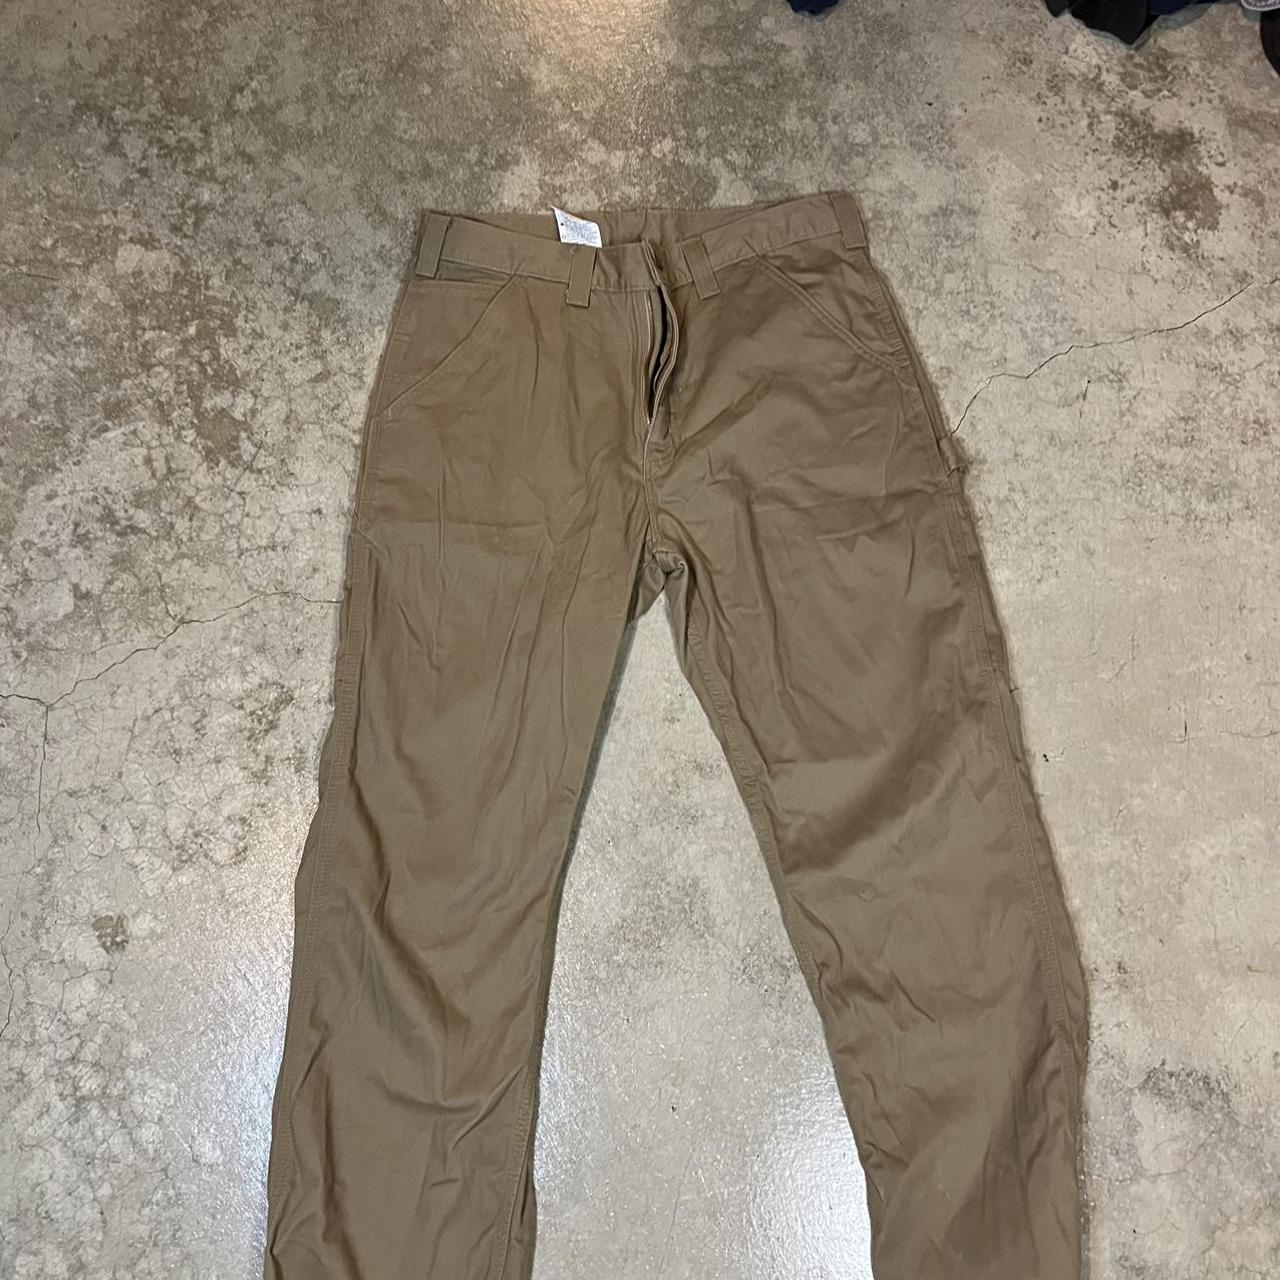 Carhartt Men's Tan and Brown Trousers | Depop